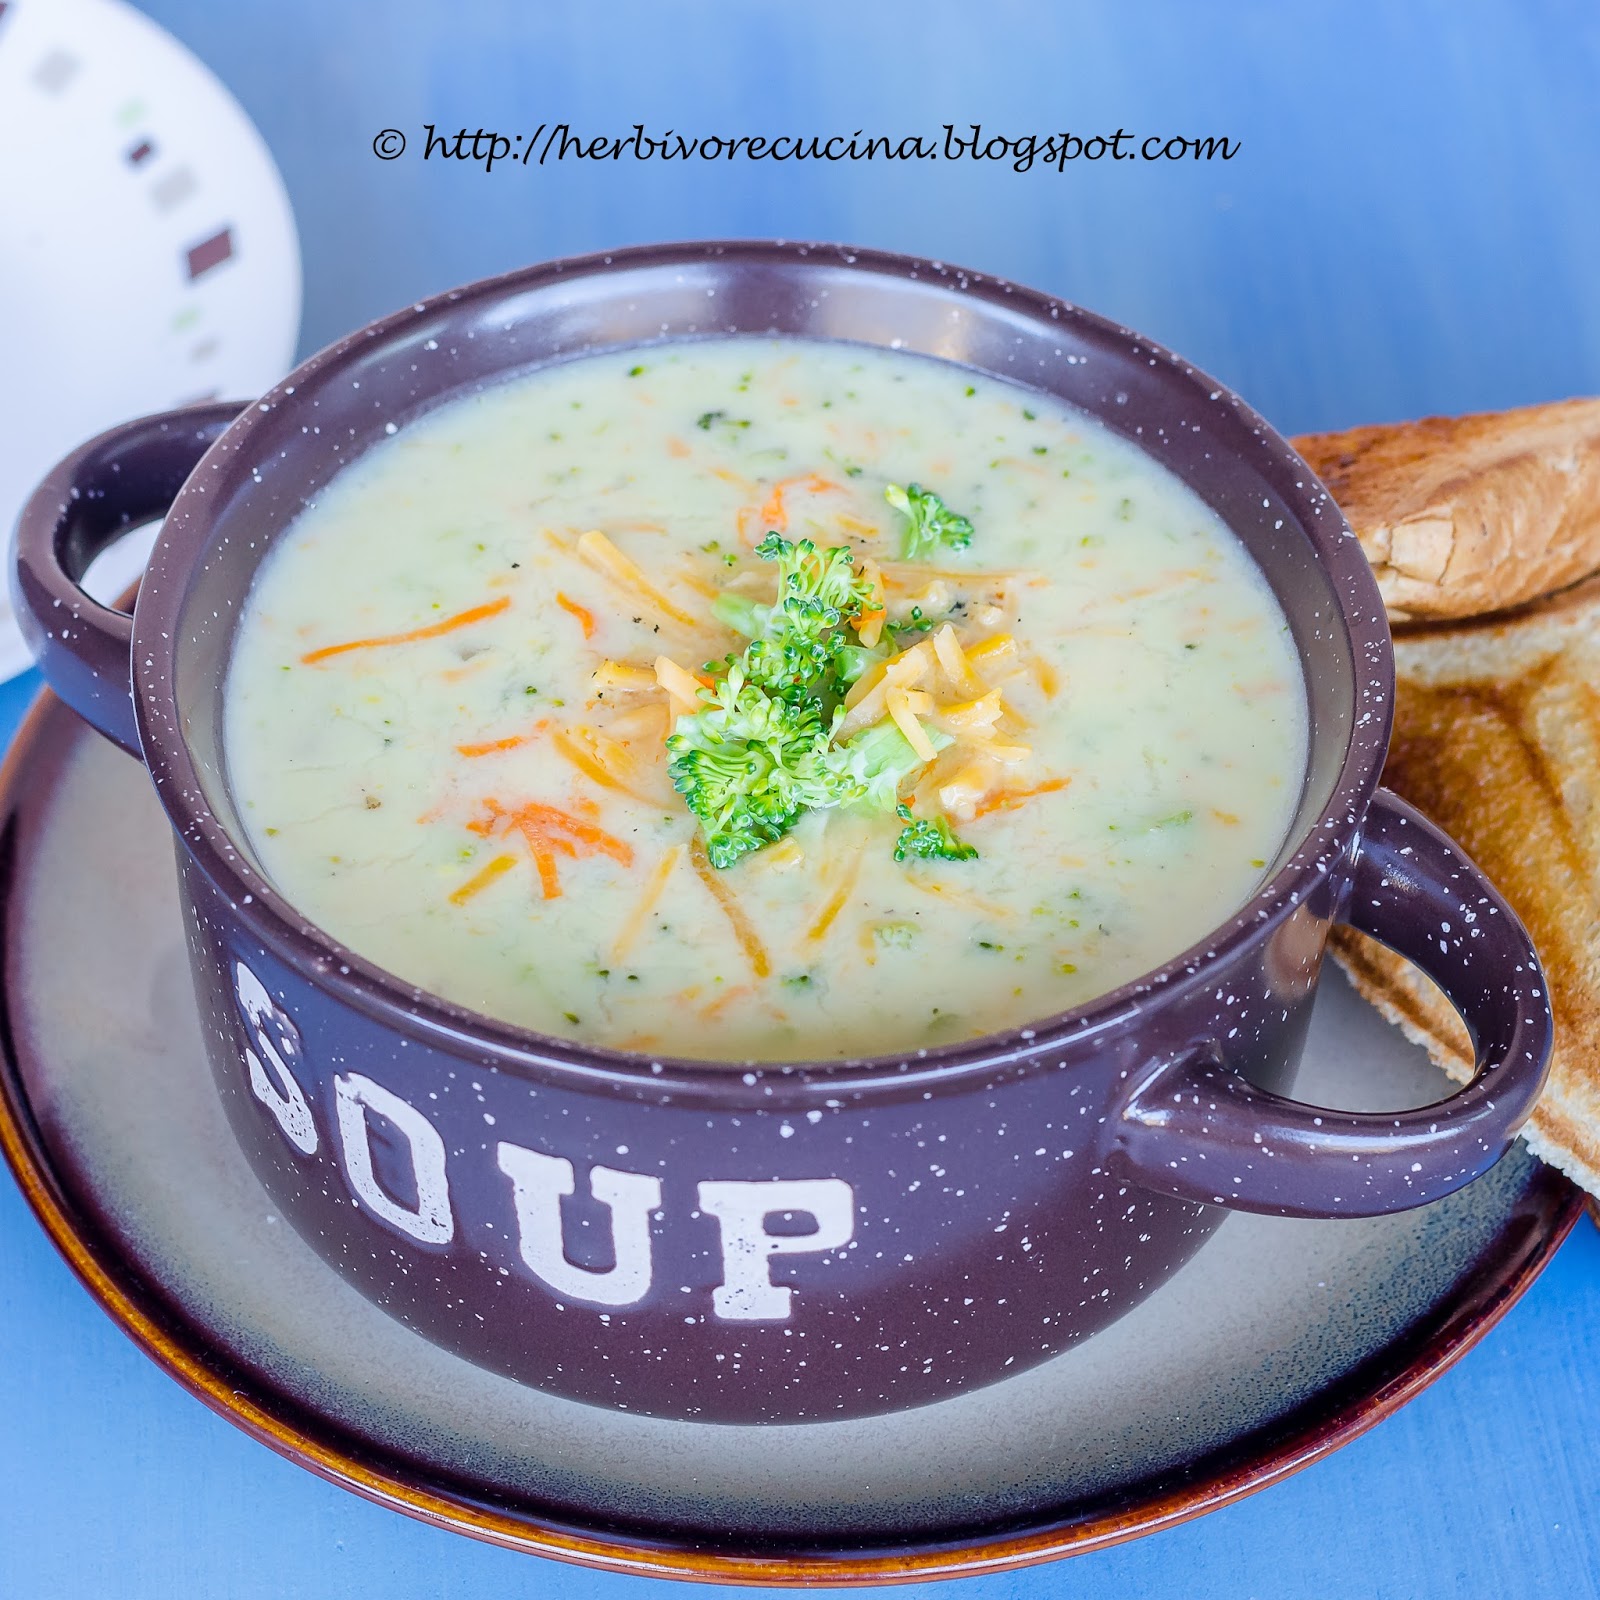 Herbivore Cucina: Broccoli Cheddar Soup